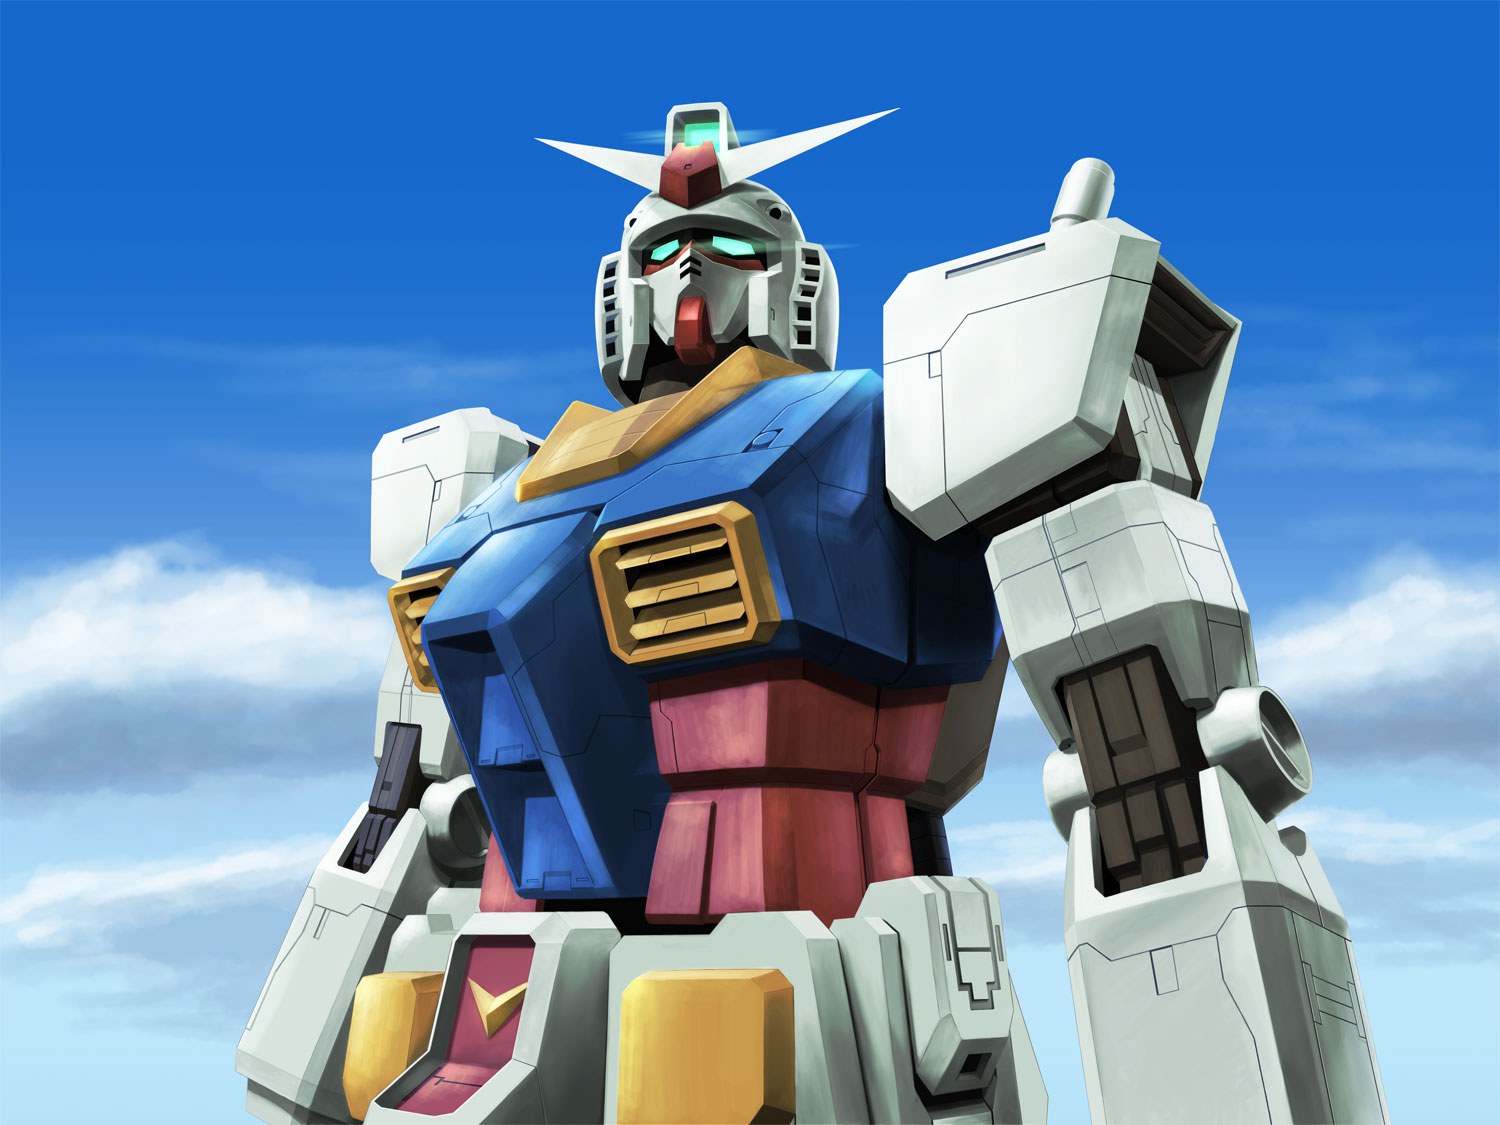 Anime Robot Gundam Mobile Suit Gundam Super Robot Wars RX 78 Gundam Artwork Digital Art Fan Art 1500x1125